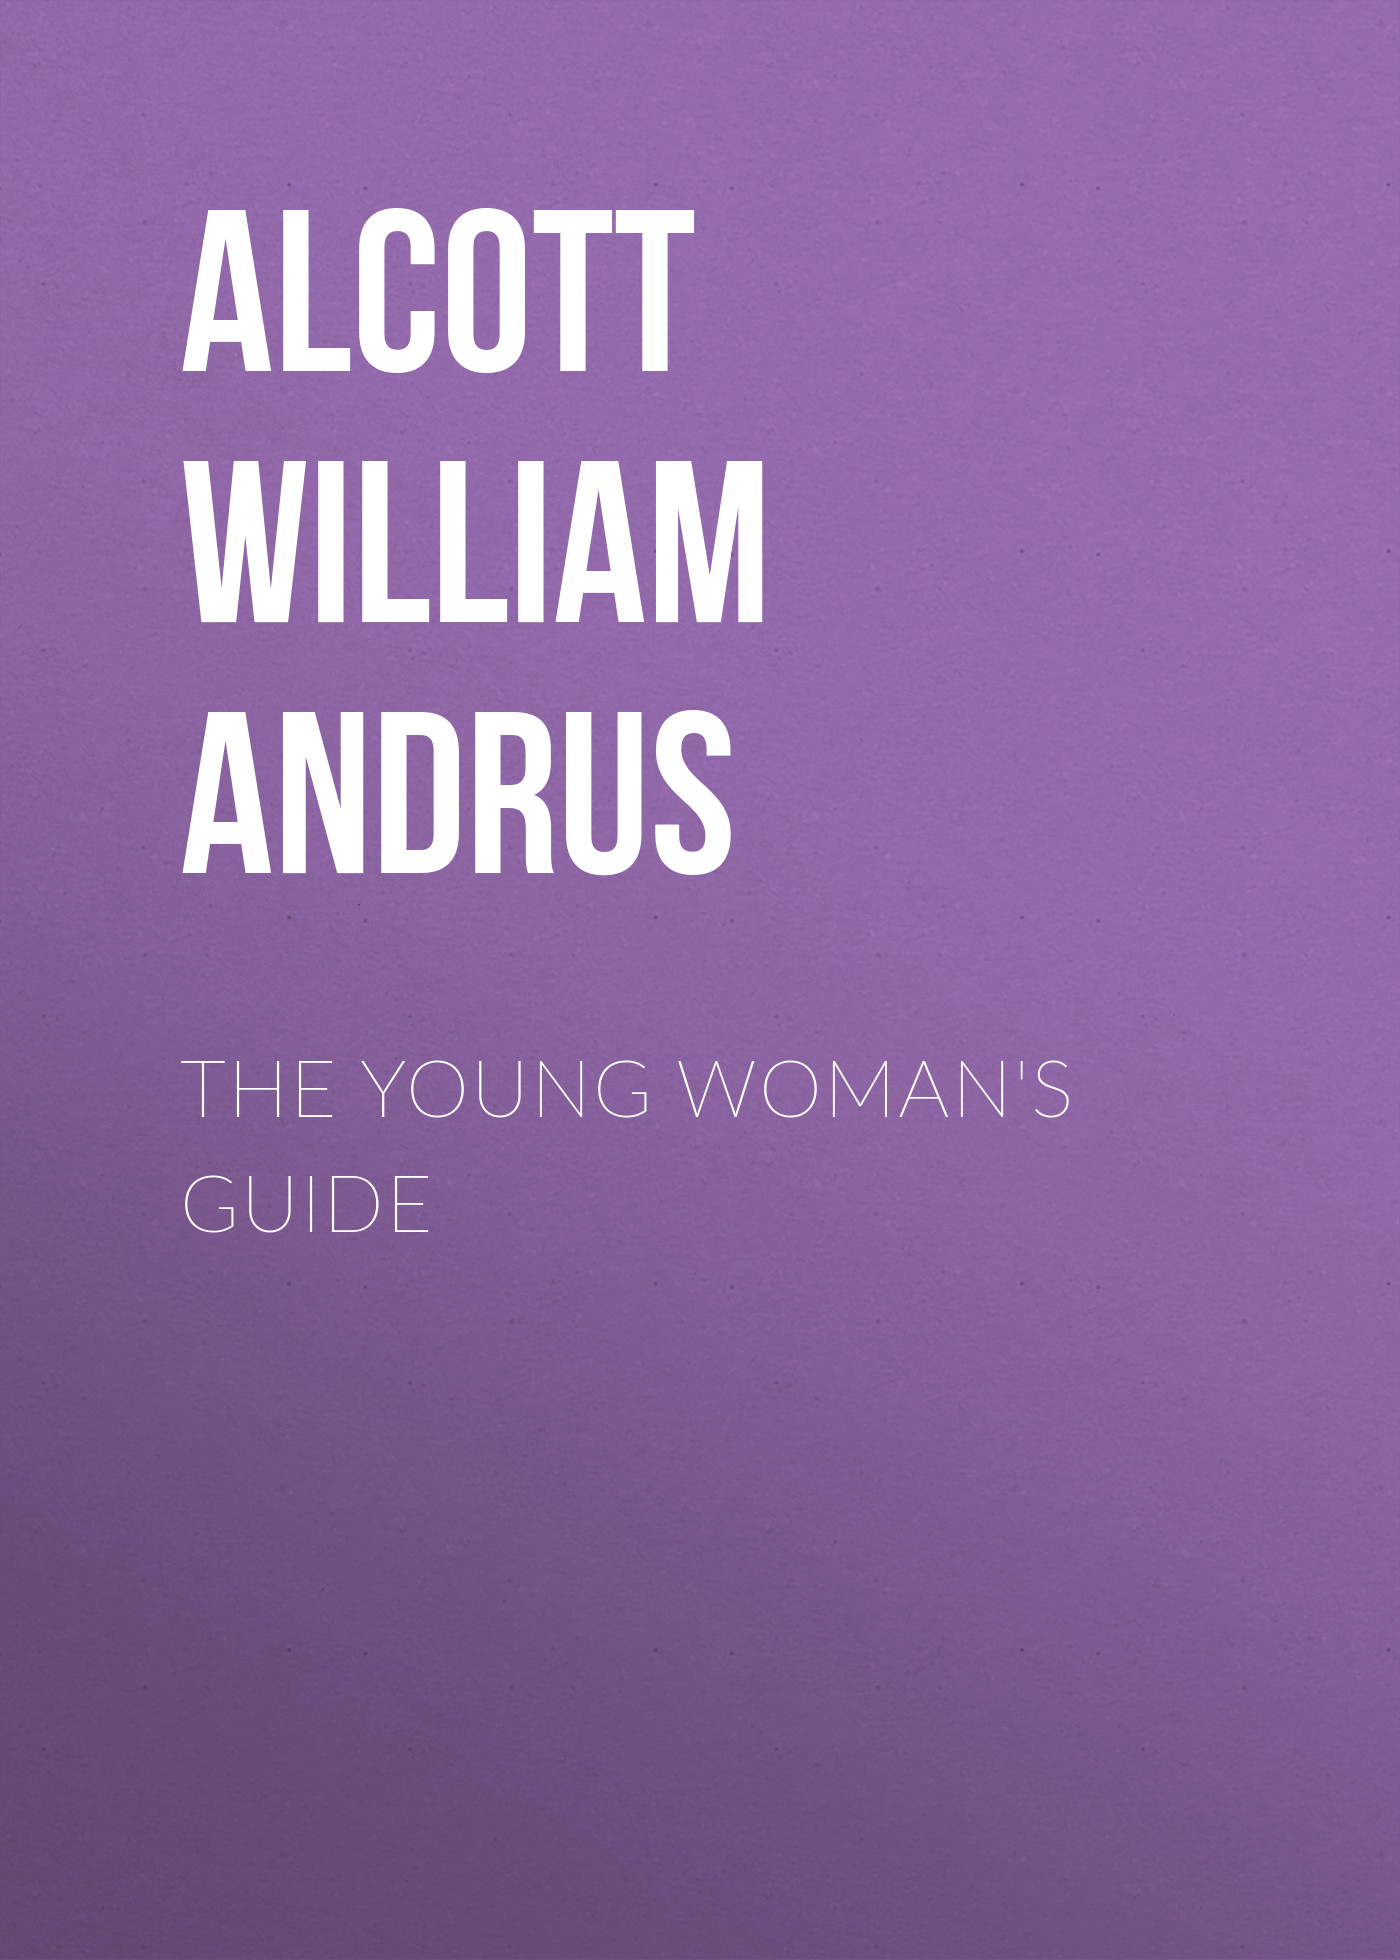 Книга The Young Woman's Guide из серии , созданная William Alcott, может относится к жанру Зарубежная классика, Зарубежная эзотерическая и религиозная литература, Философия, Зарубежная психология, Зарубежная старинная литература. Стоимость электронной книги The Young Woman's Guide с идентификатором 36363526 составляет 0 руб.